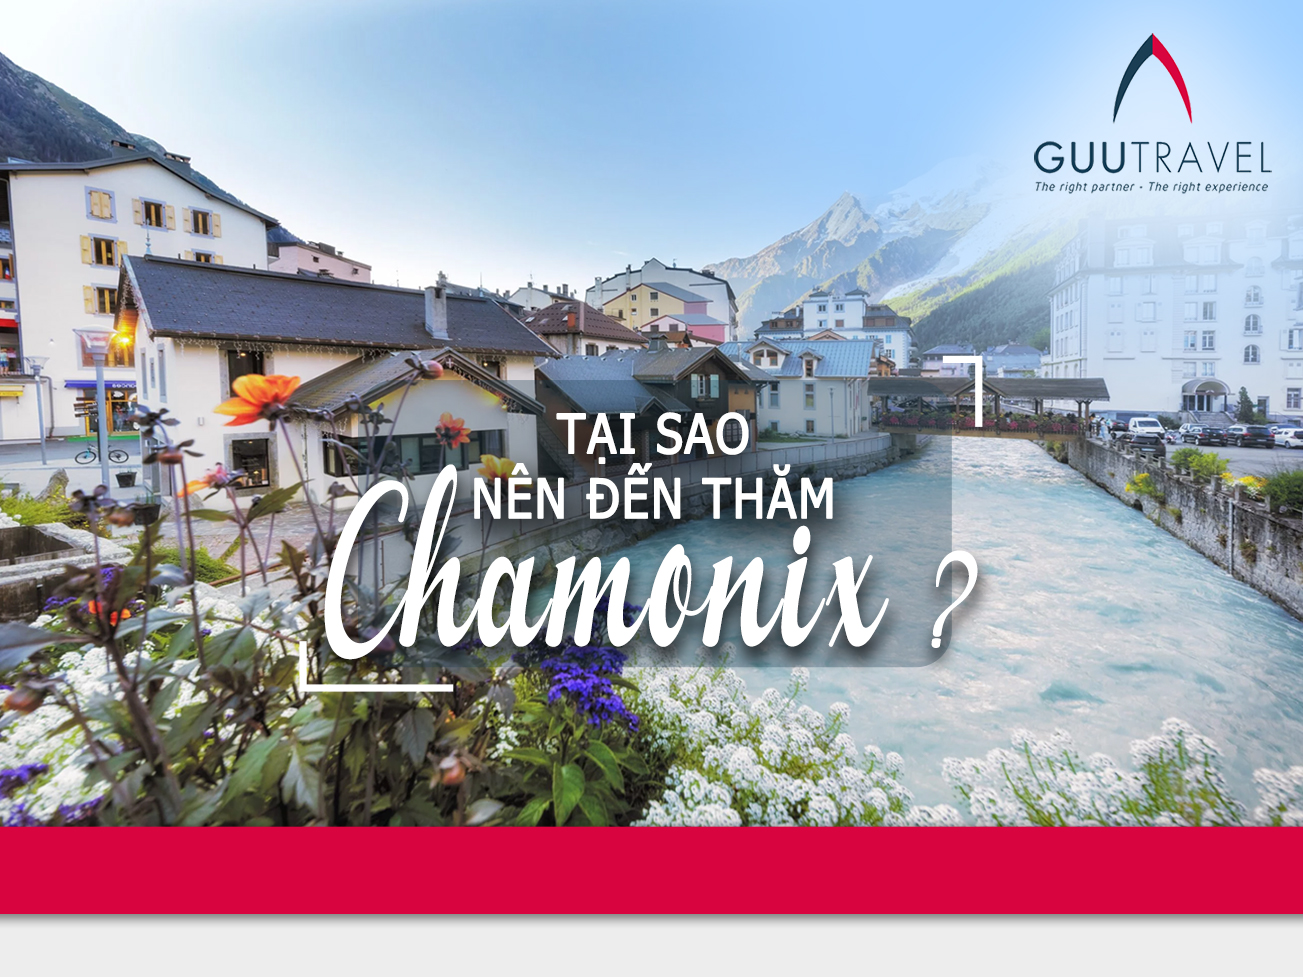 Tại sao nên đến thăm Chamonix?